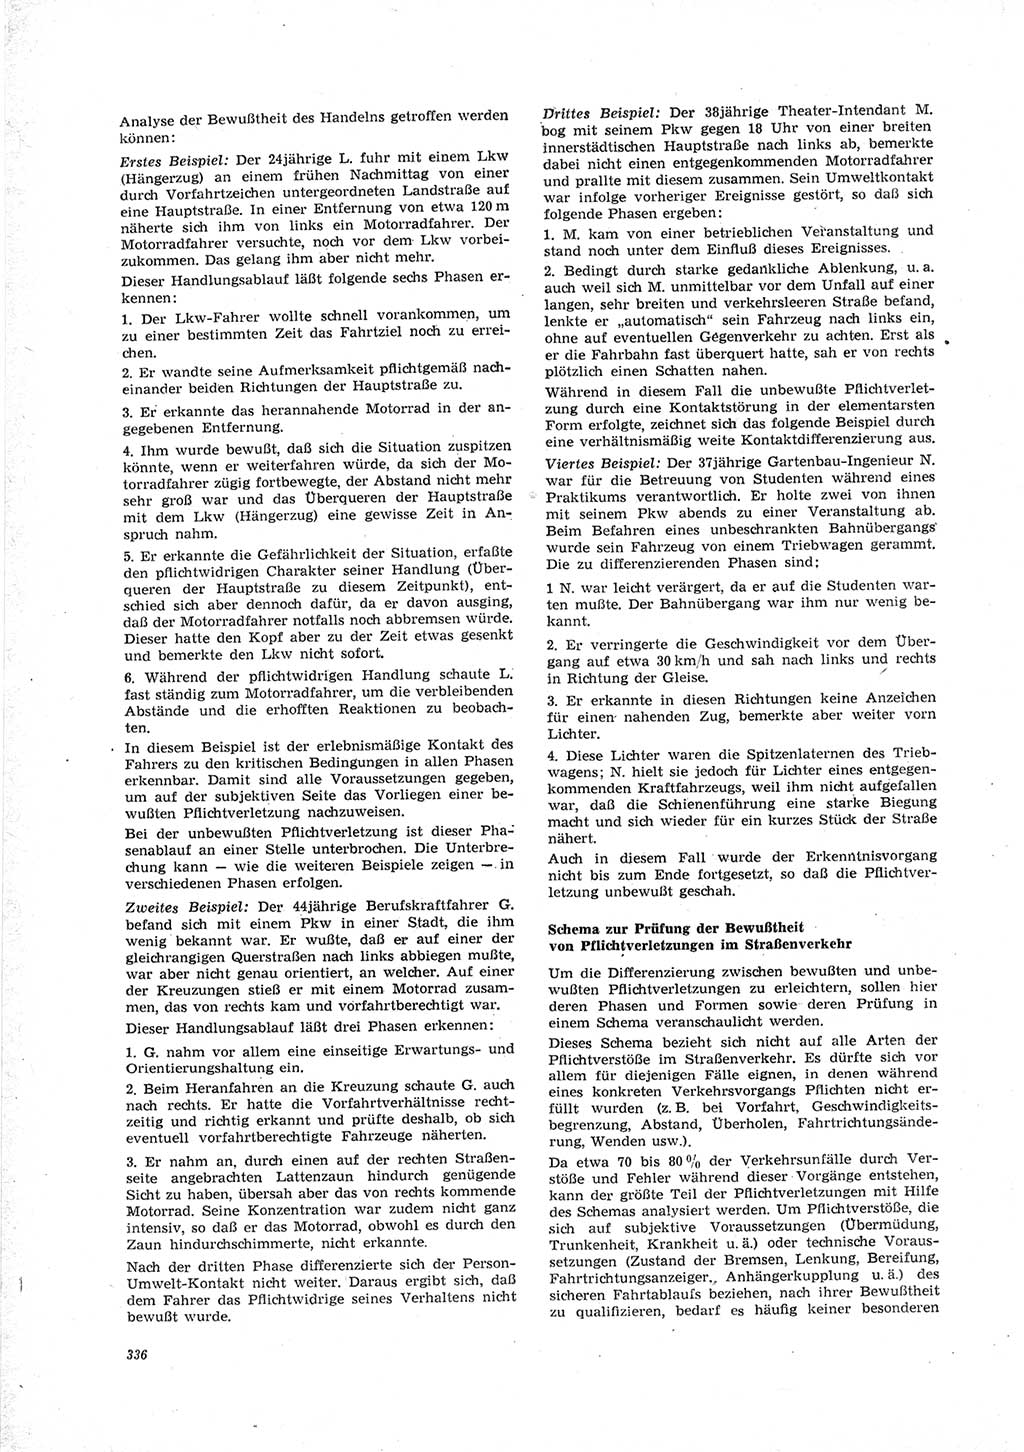 Neue Justiz (NJ), Zeitschrift für Recht und Rechtswissenschaft [Deutsche Demokratische Republik (DDR)], 23. Jahrgang 1969, Seite 336 (NJ DDR 1969, S. 336)